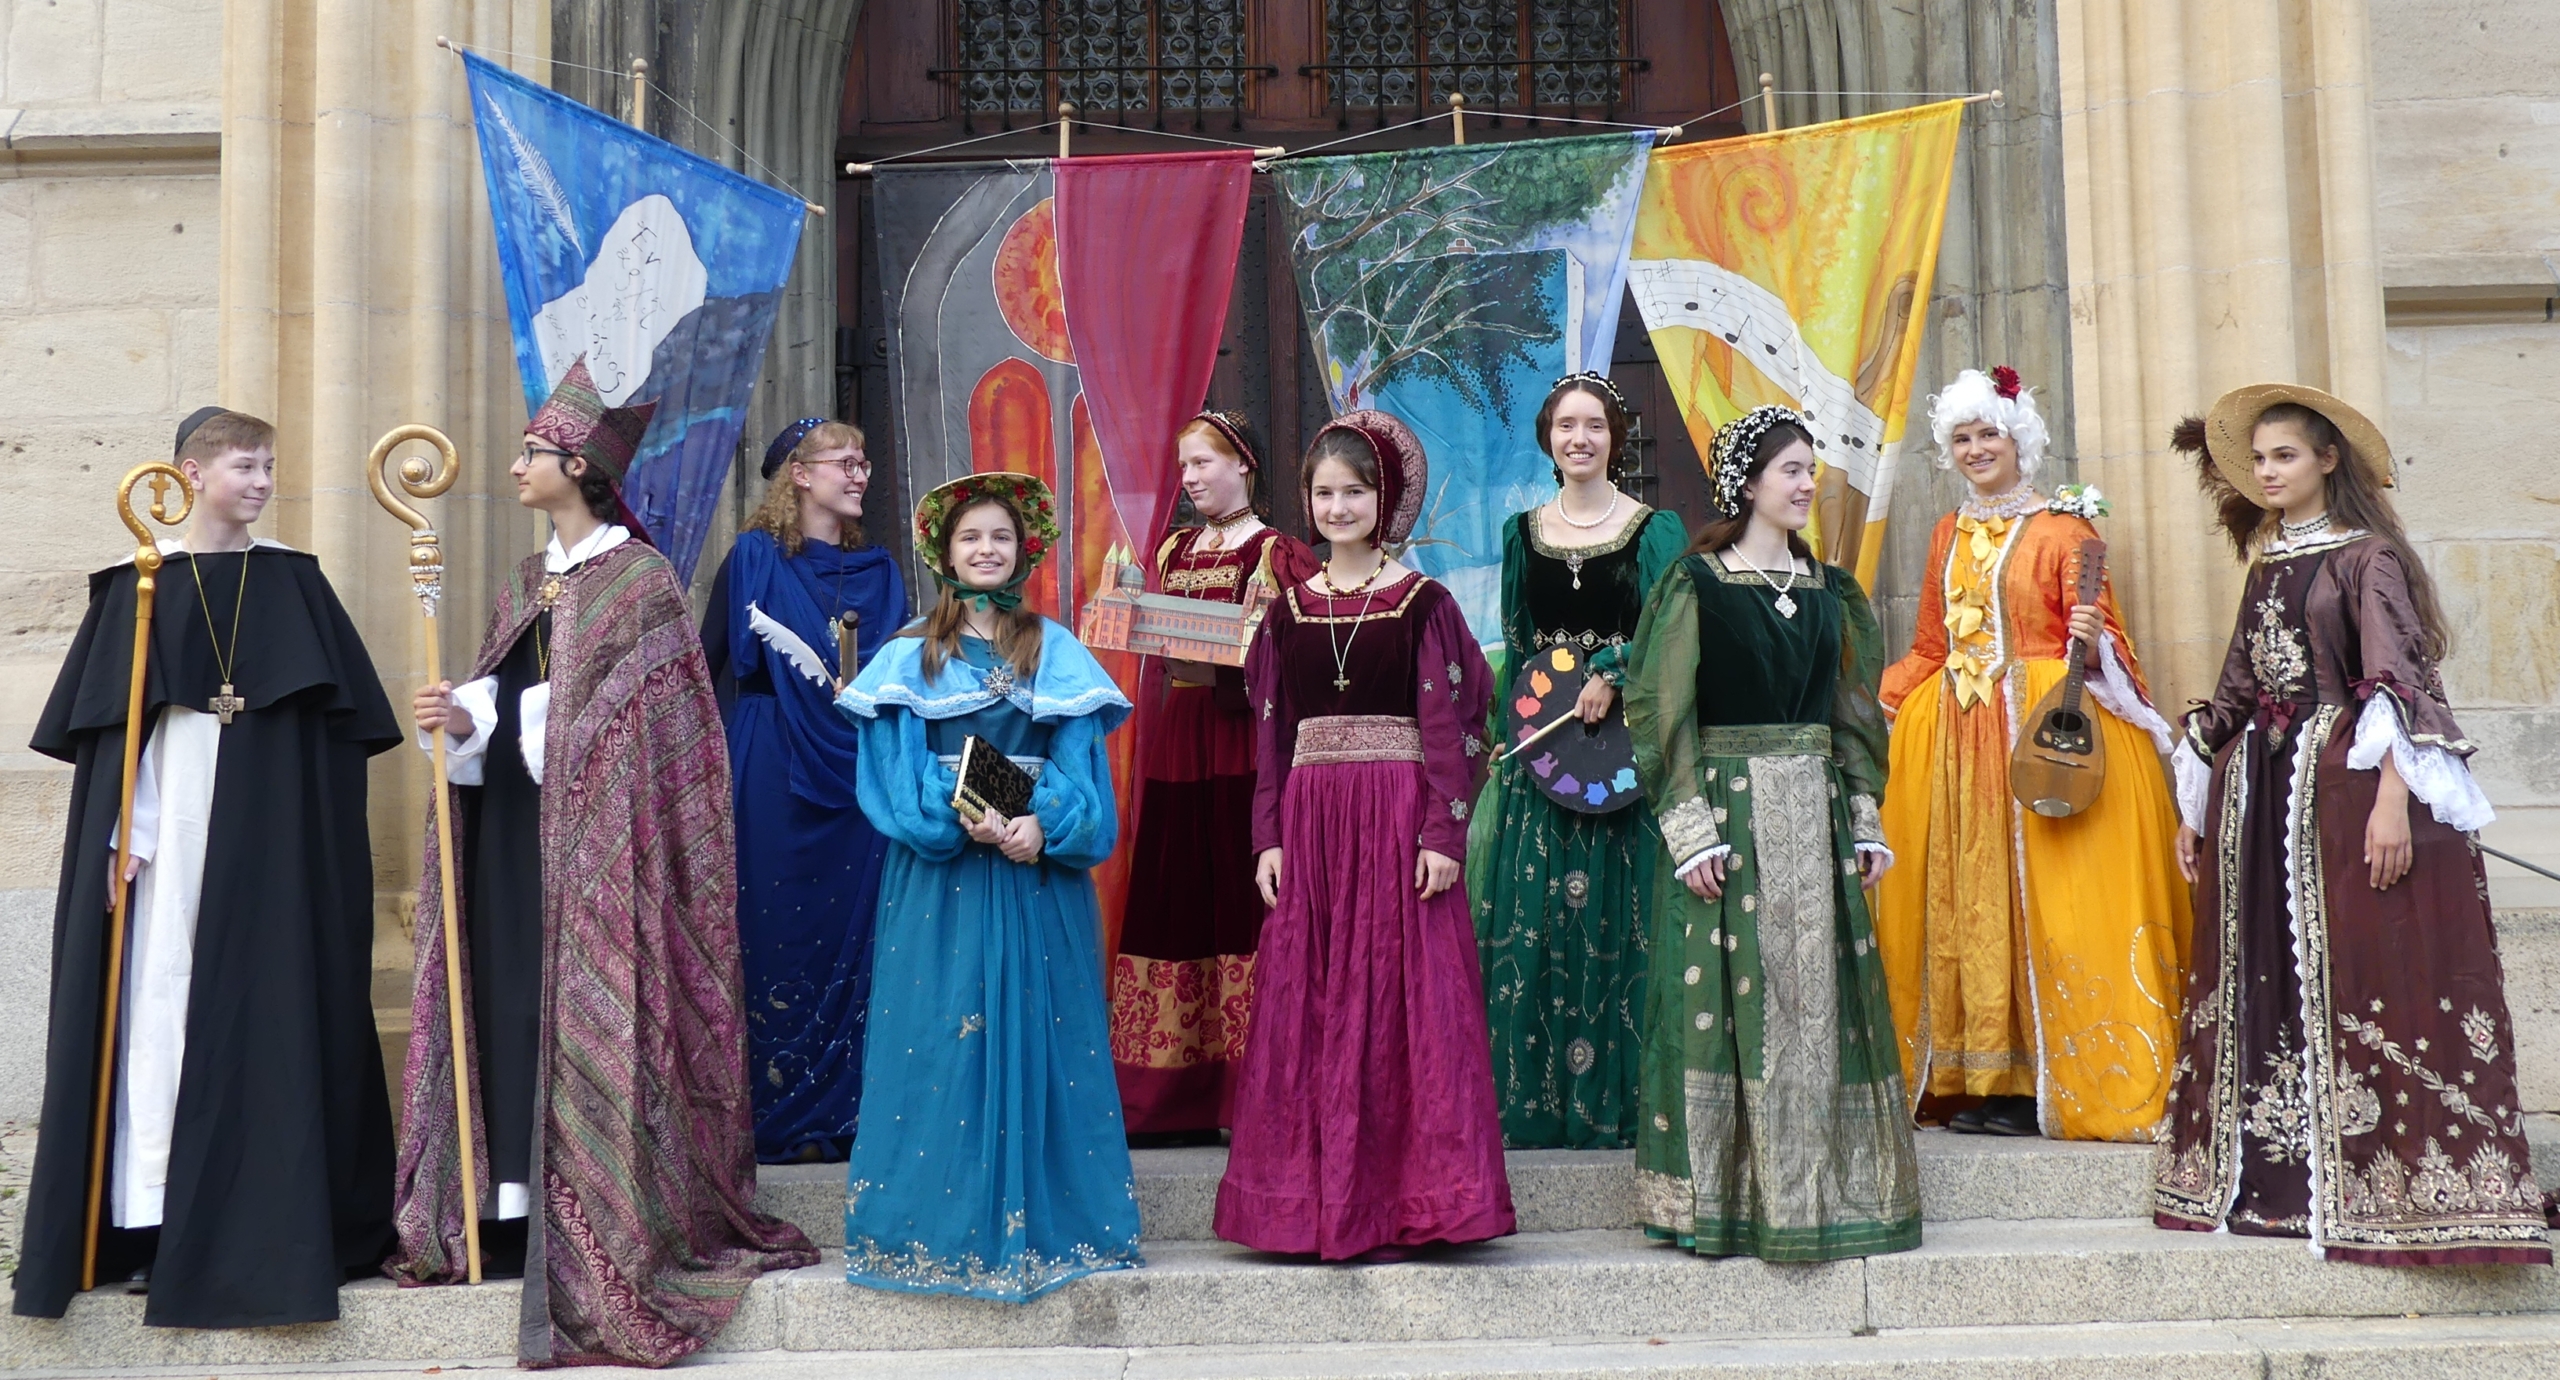 Kostümprobe vor dem Münster. Foto: Veronika Heckmann-Hageloch